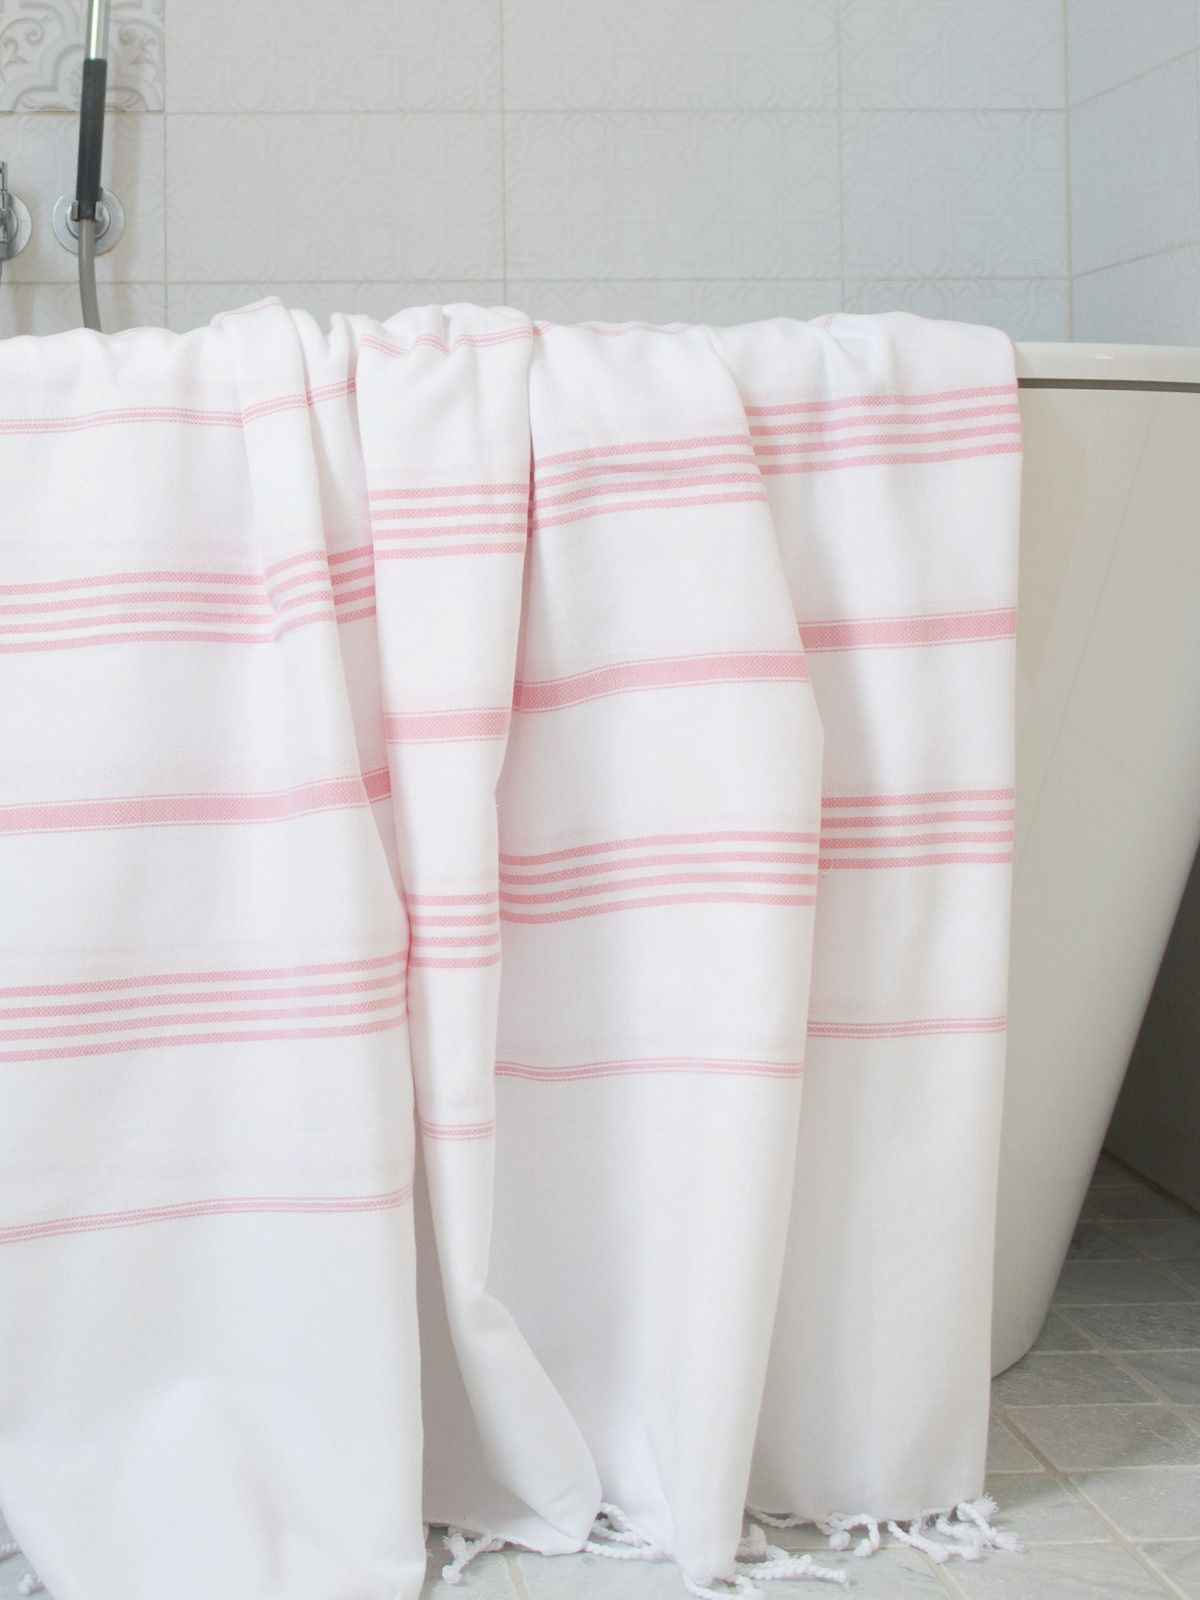 asciugamano hammam bianco/rosa polvere